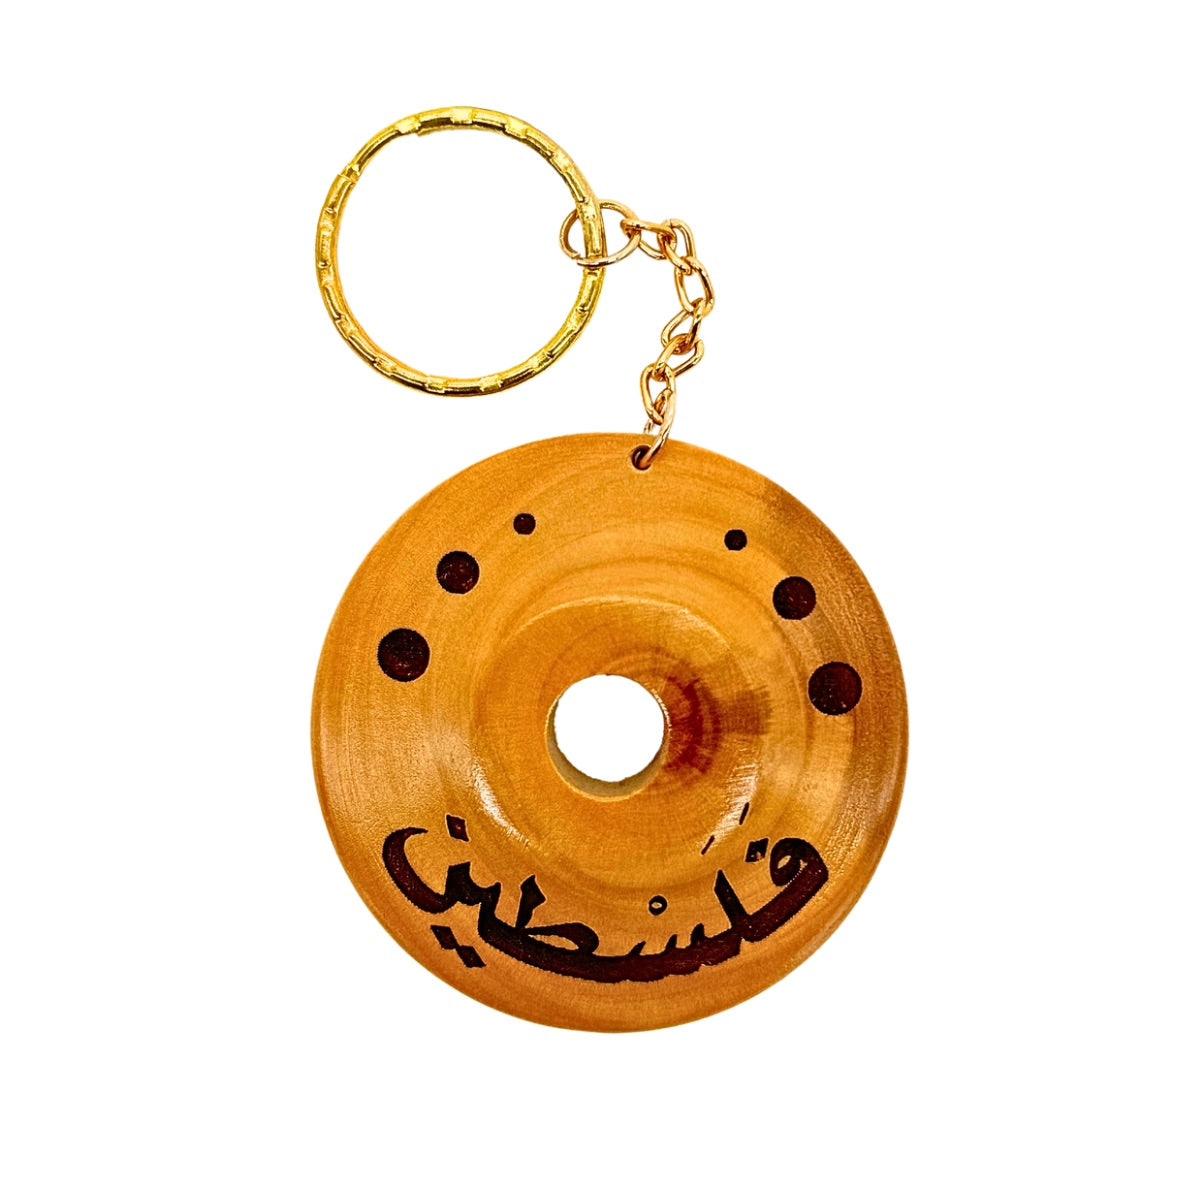 Olive Wood “Palestine”Keychain